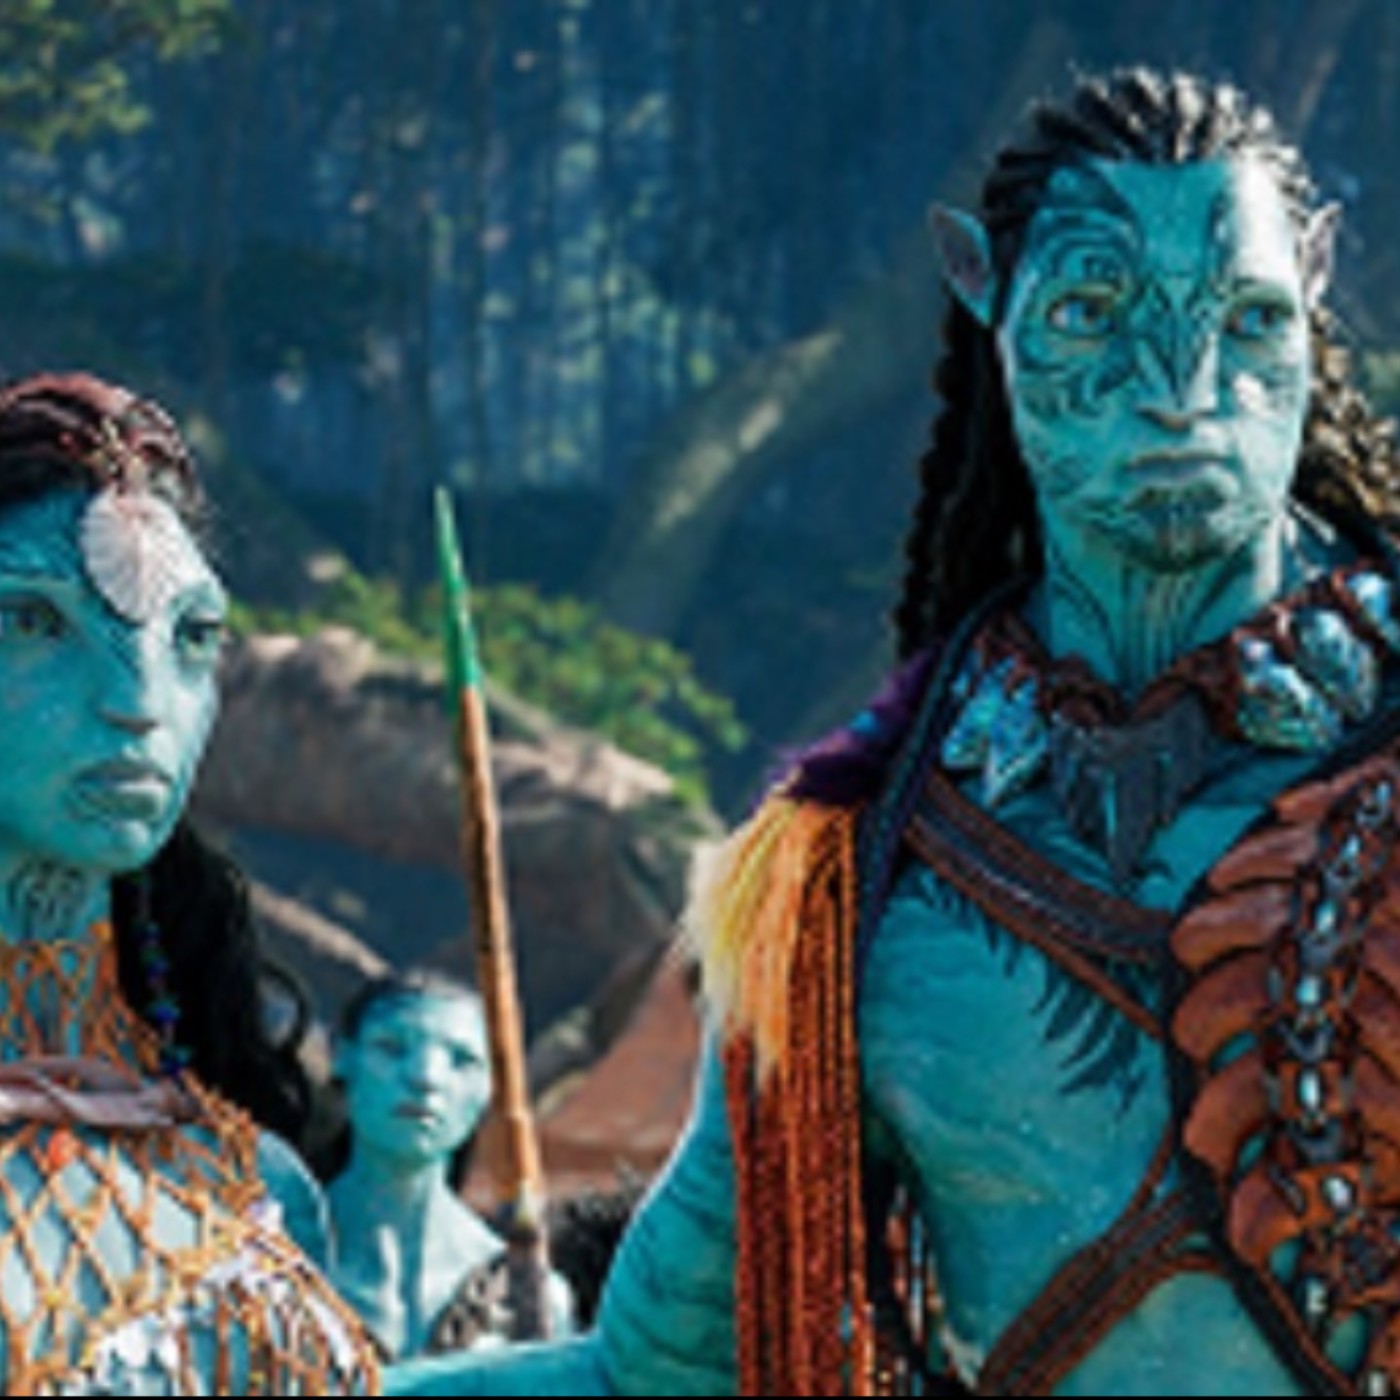 Ver Avatar: El camino del agua | Película completa | 2022 Español y Latino  | Podcast on SoundOn